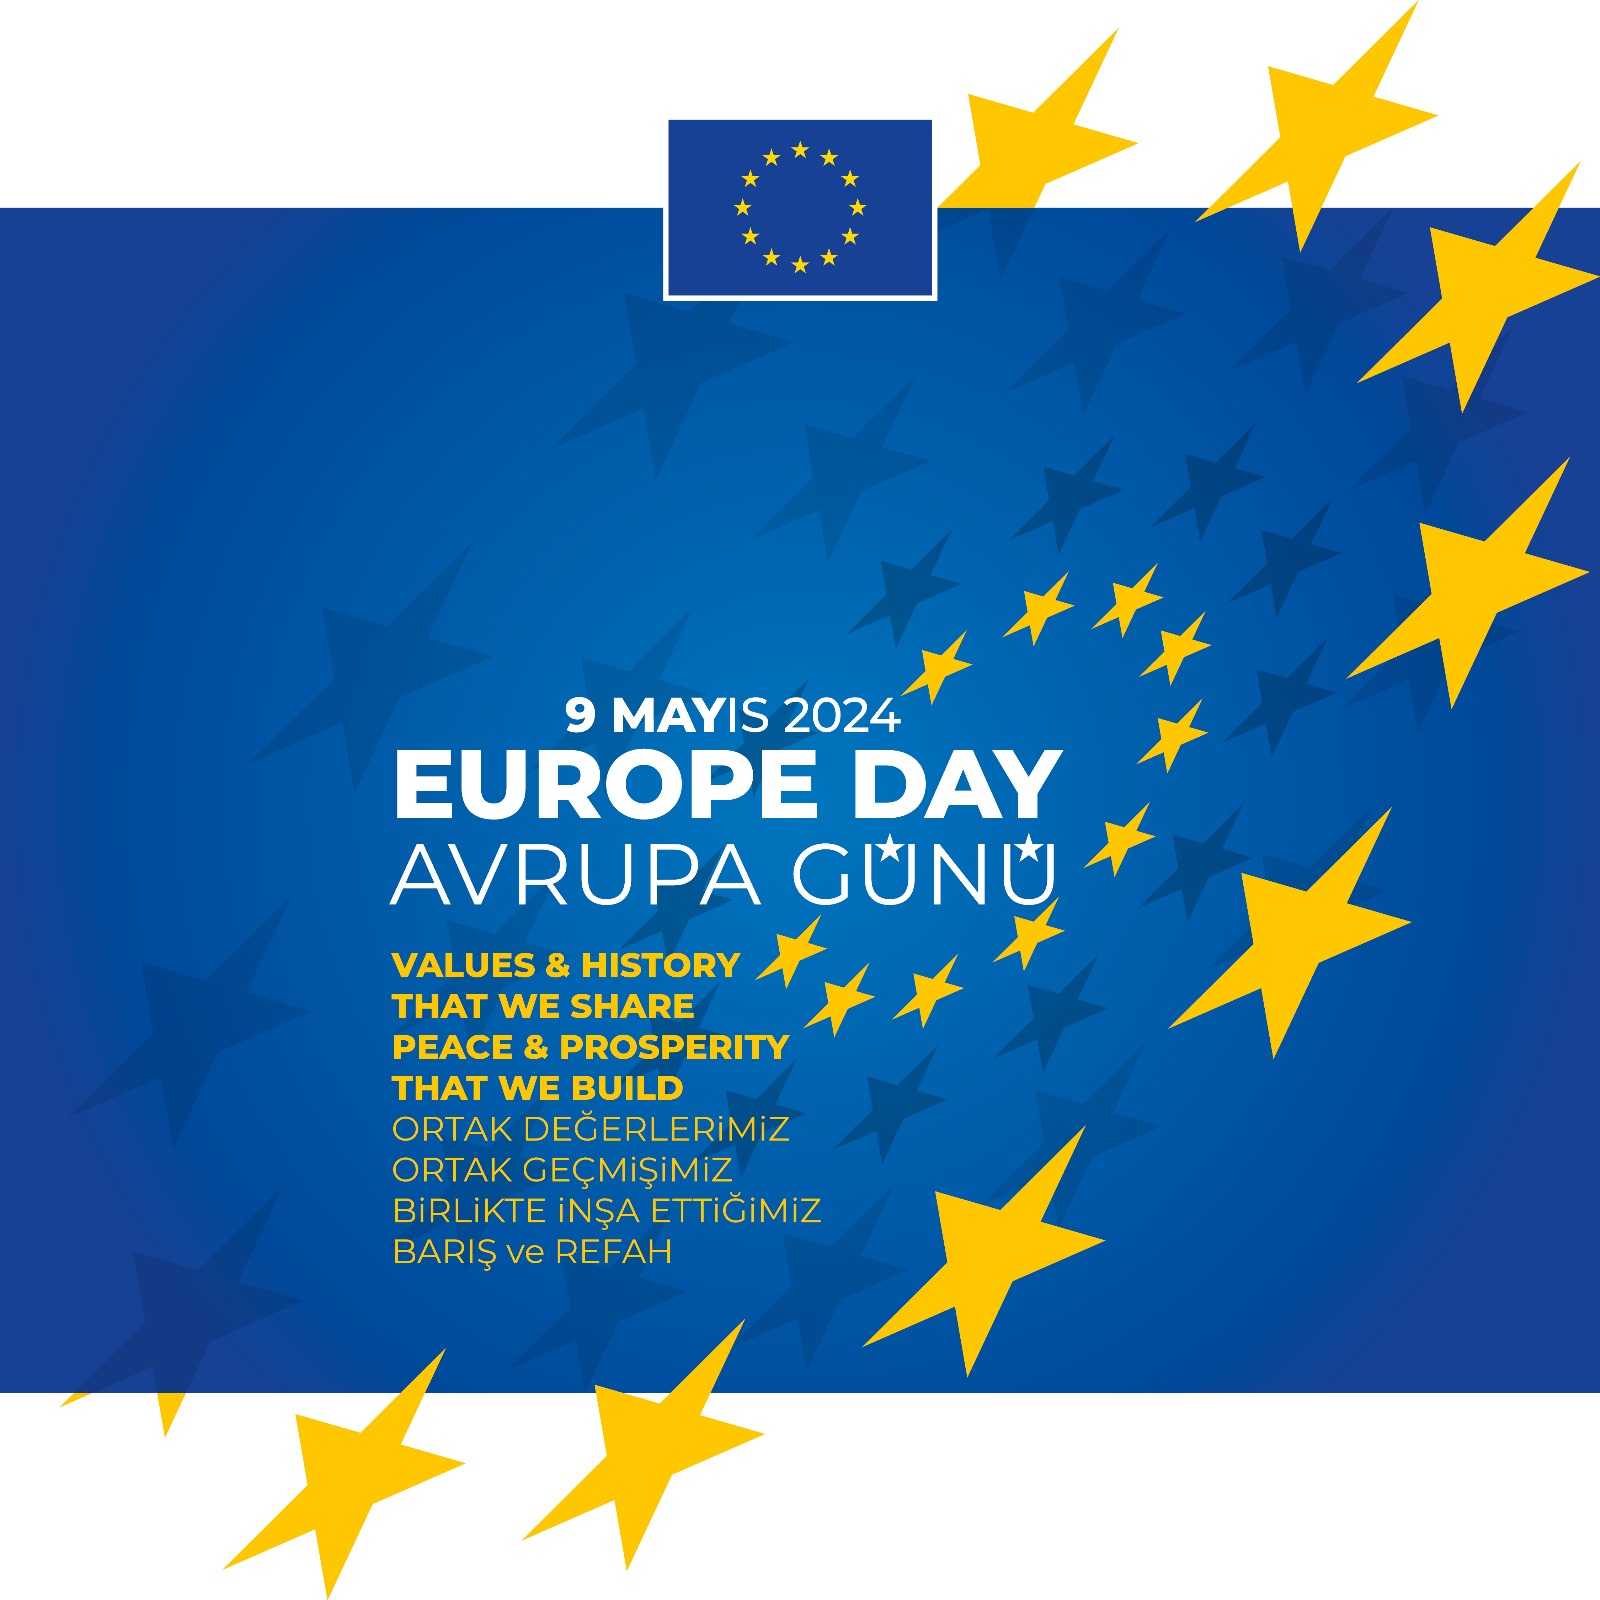 Avrupa Günü 9 Mayıs'ta çeşitli heyecan verici kültürel etkinliklerle kutlanacak